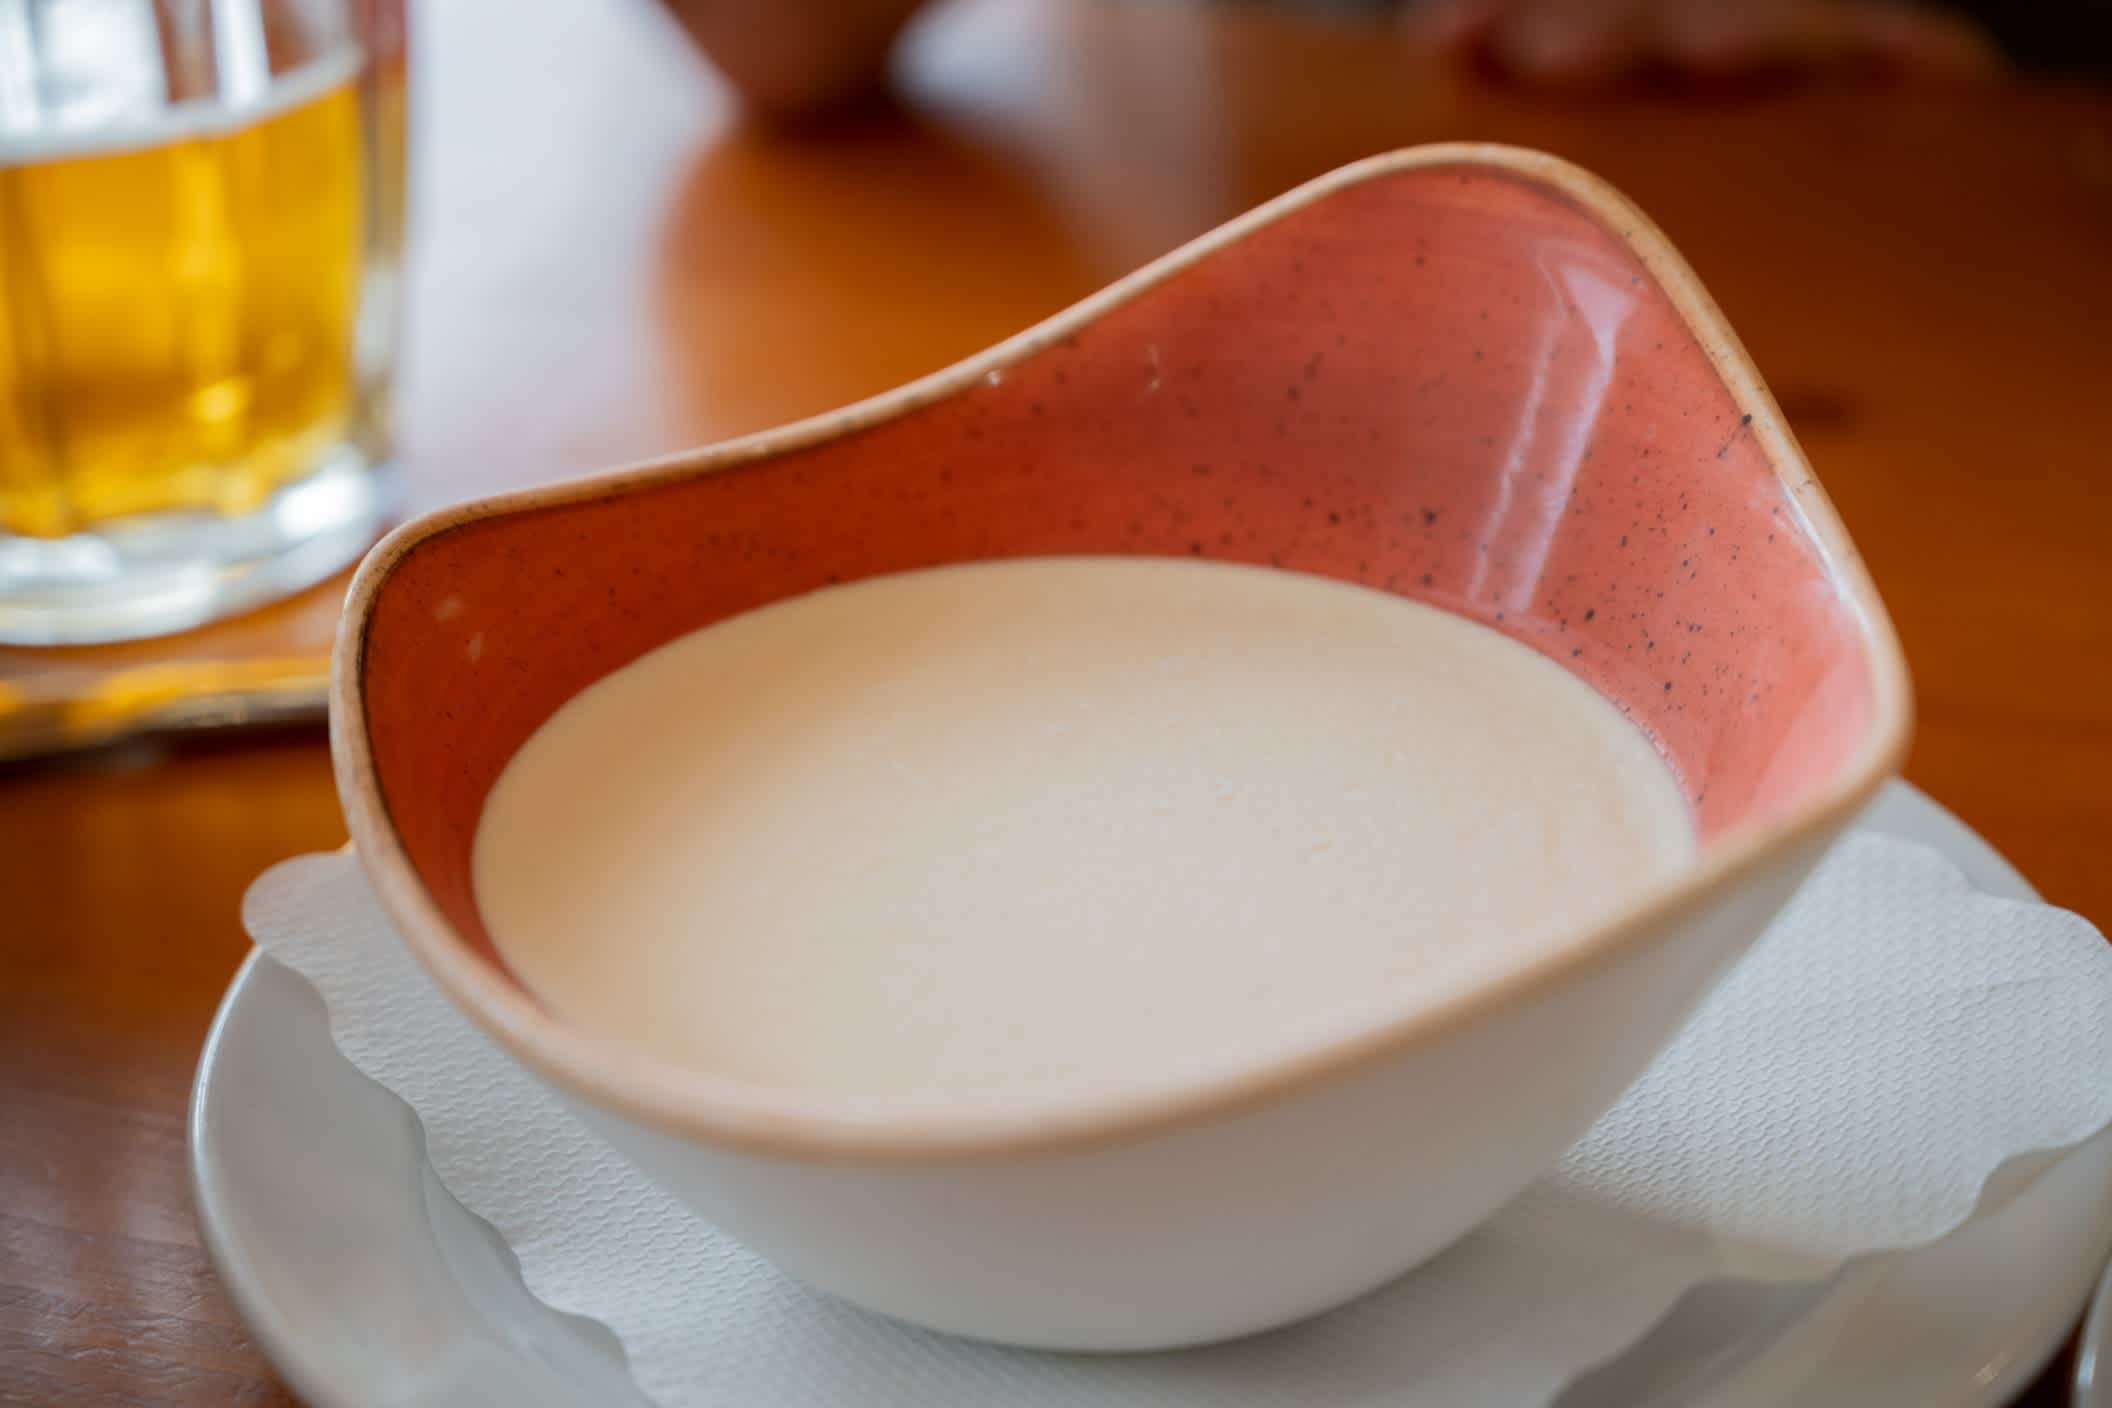 Eine Schüssel mit slowenischer Sauermilch "Kislo mleko", ein Lebensmittel, das durch die Säuerung der Milch durch bakterielle Fermentation entsteht.